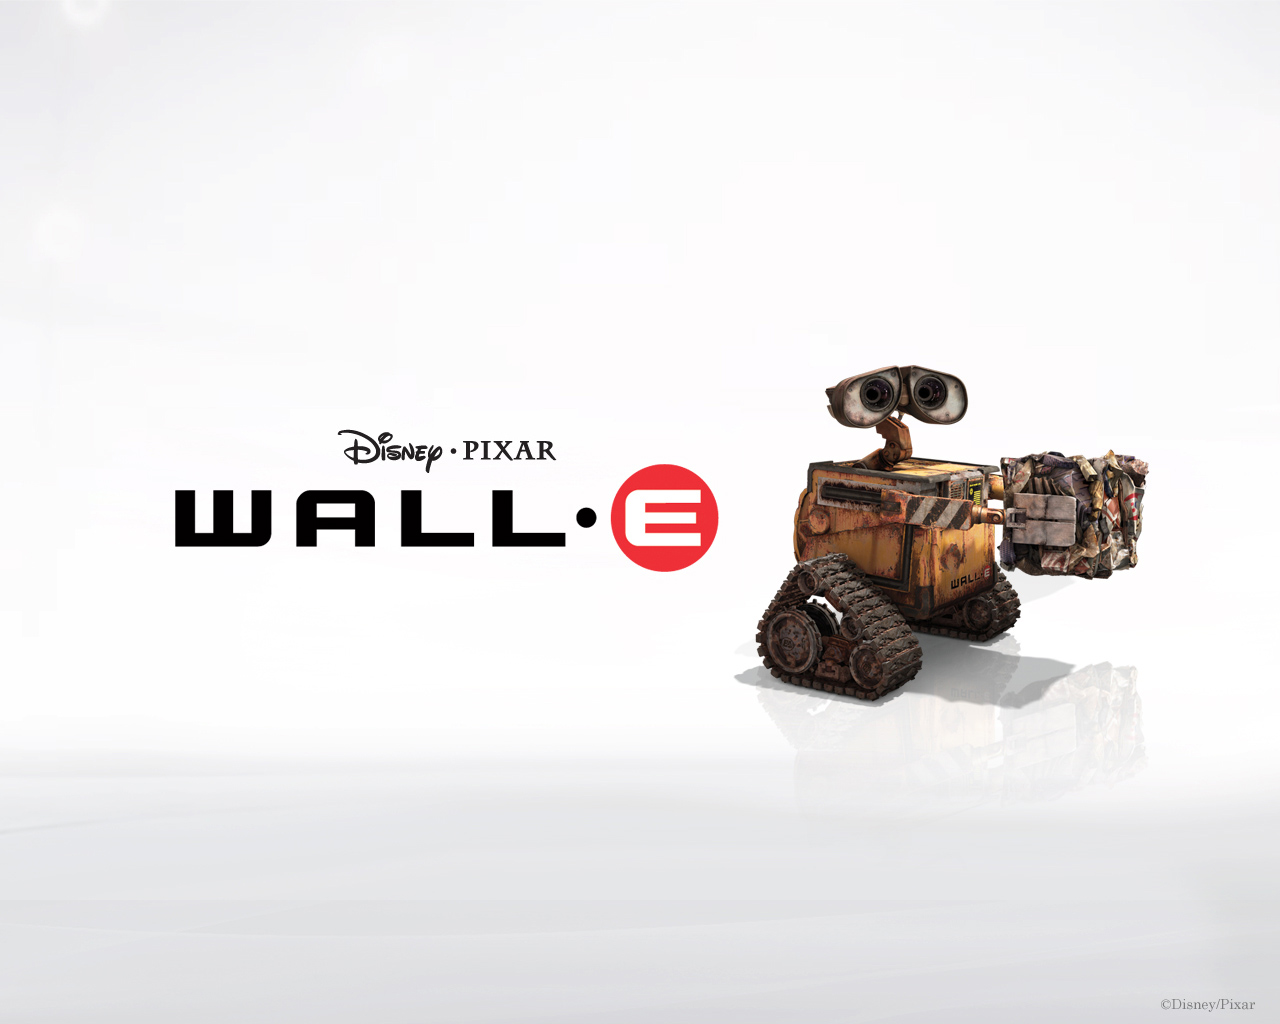 壁纸1280x1024星际总动员 WALL E 迪士尼和皮克斯出品的动画片 壁纸15壁纸 《星际总动员》(WA壁纸 《星际总动员》(WA图片 《星际总动员》(WA素材 影视壁纸 影视图库 影视图片素材桌面壁纸